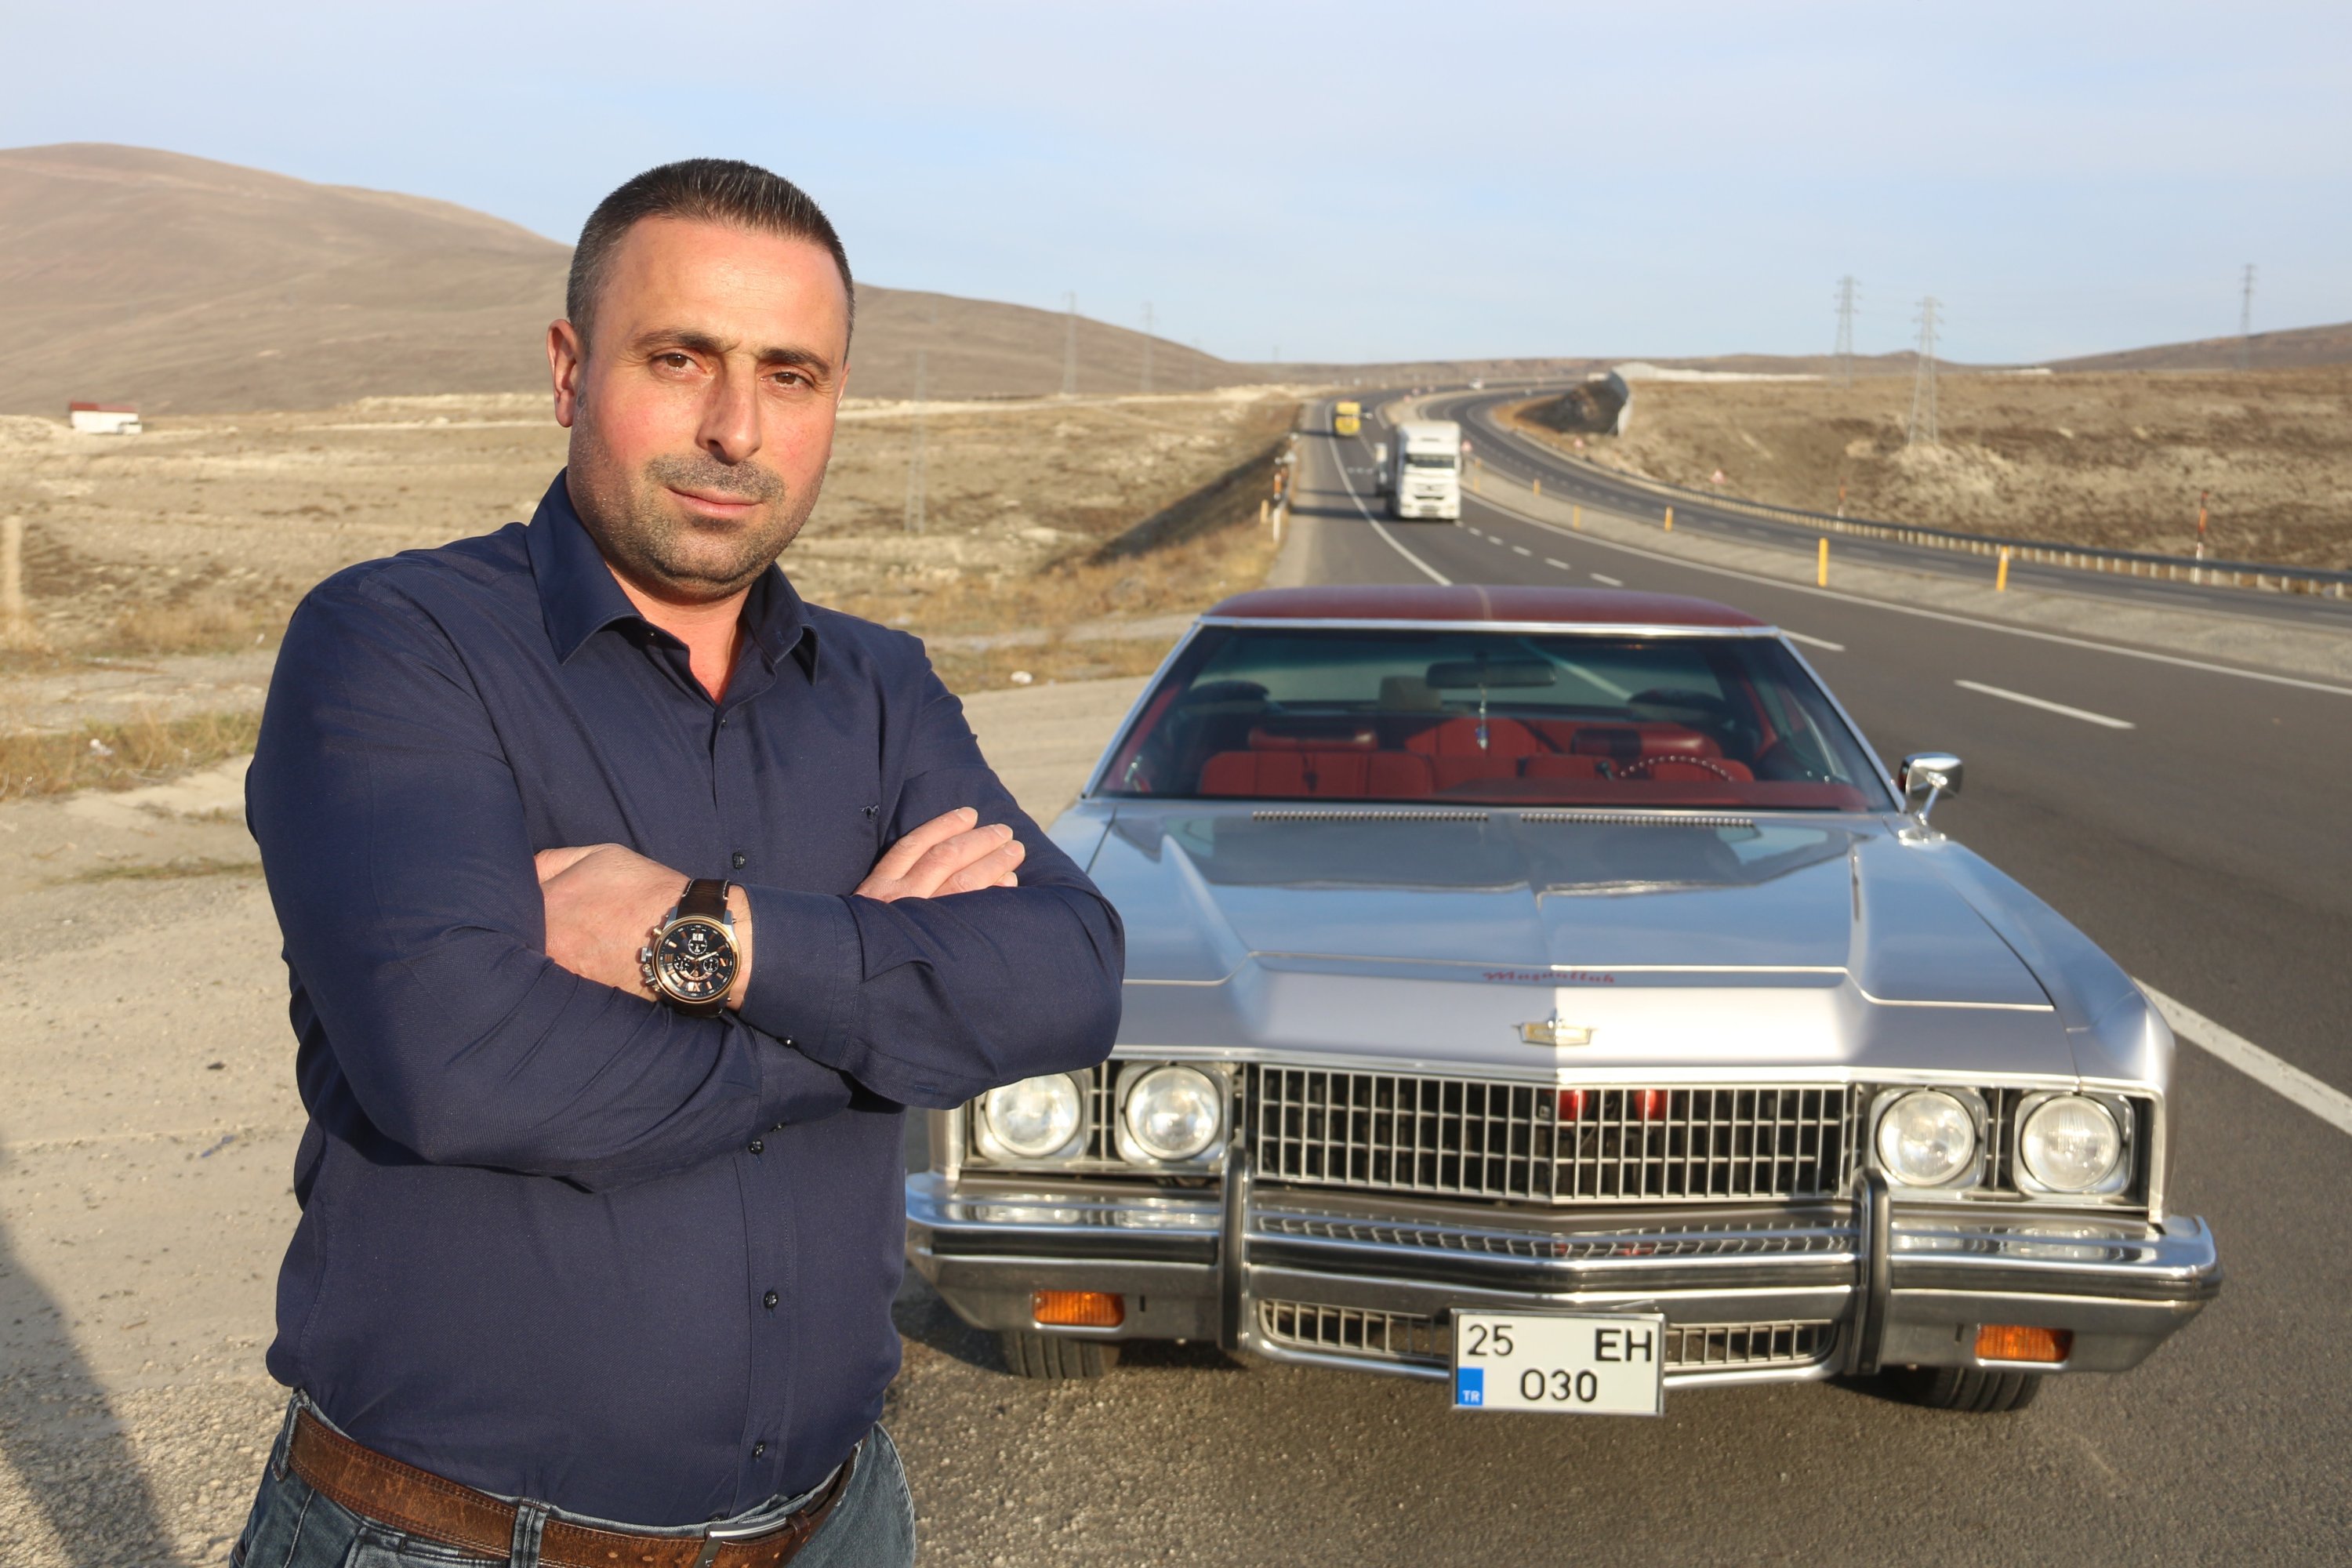 Haluk Ertek standing in front of his 1973 Chevrolet Caprice Classic in Erzurum, Turkey, Nov. 9, 2021 (IHA Photo)